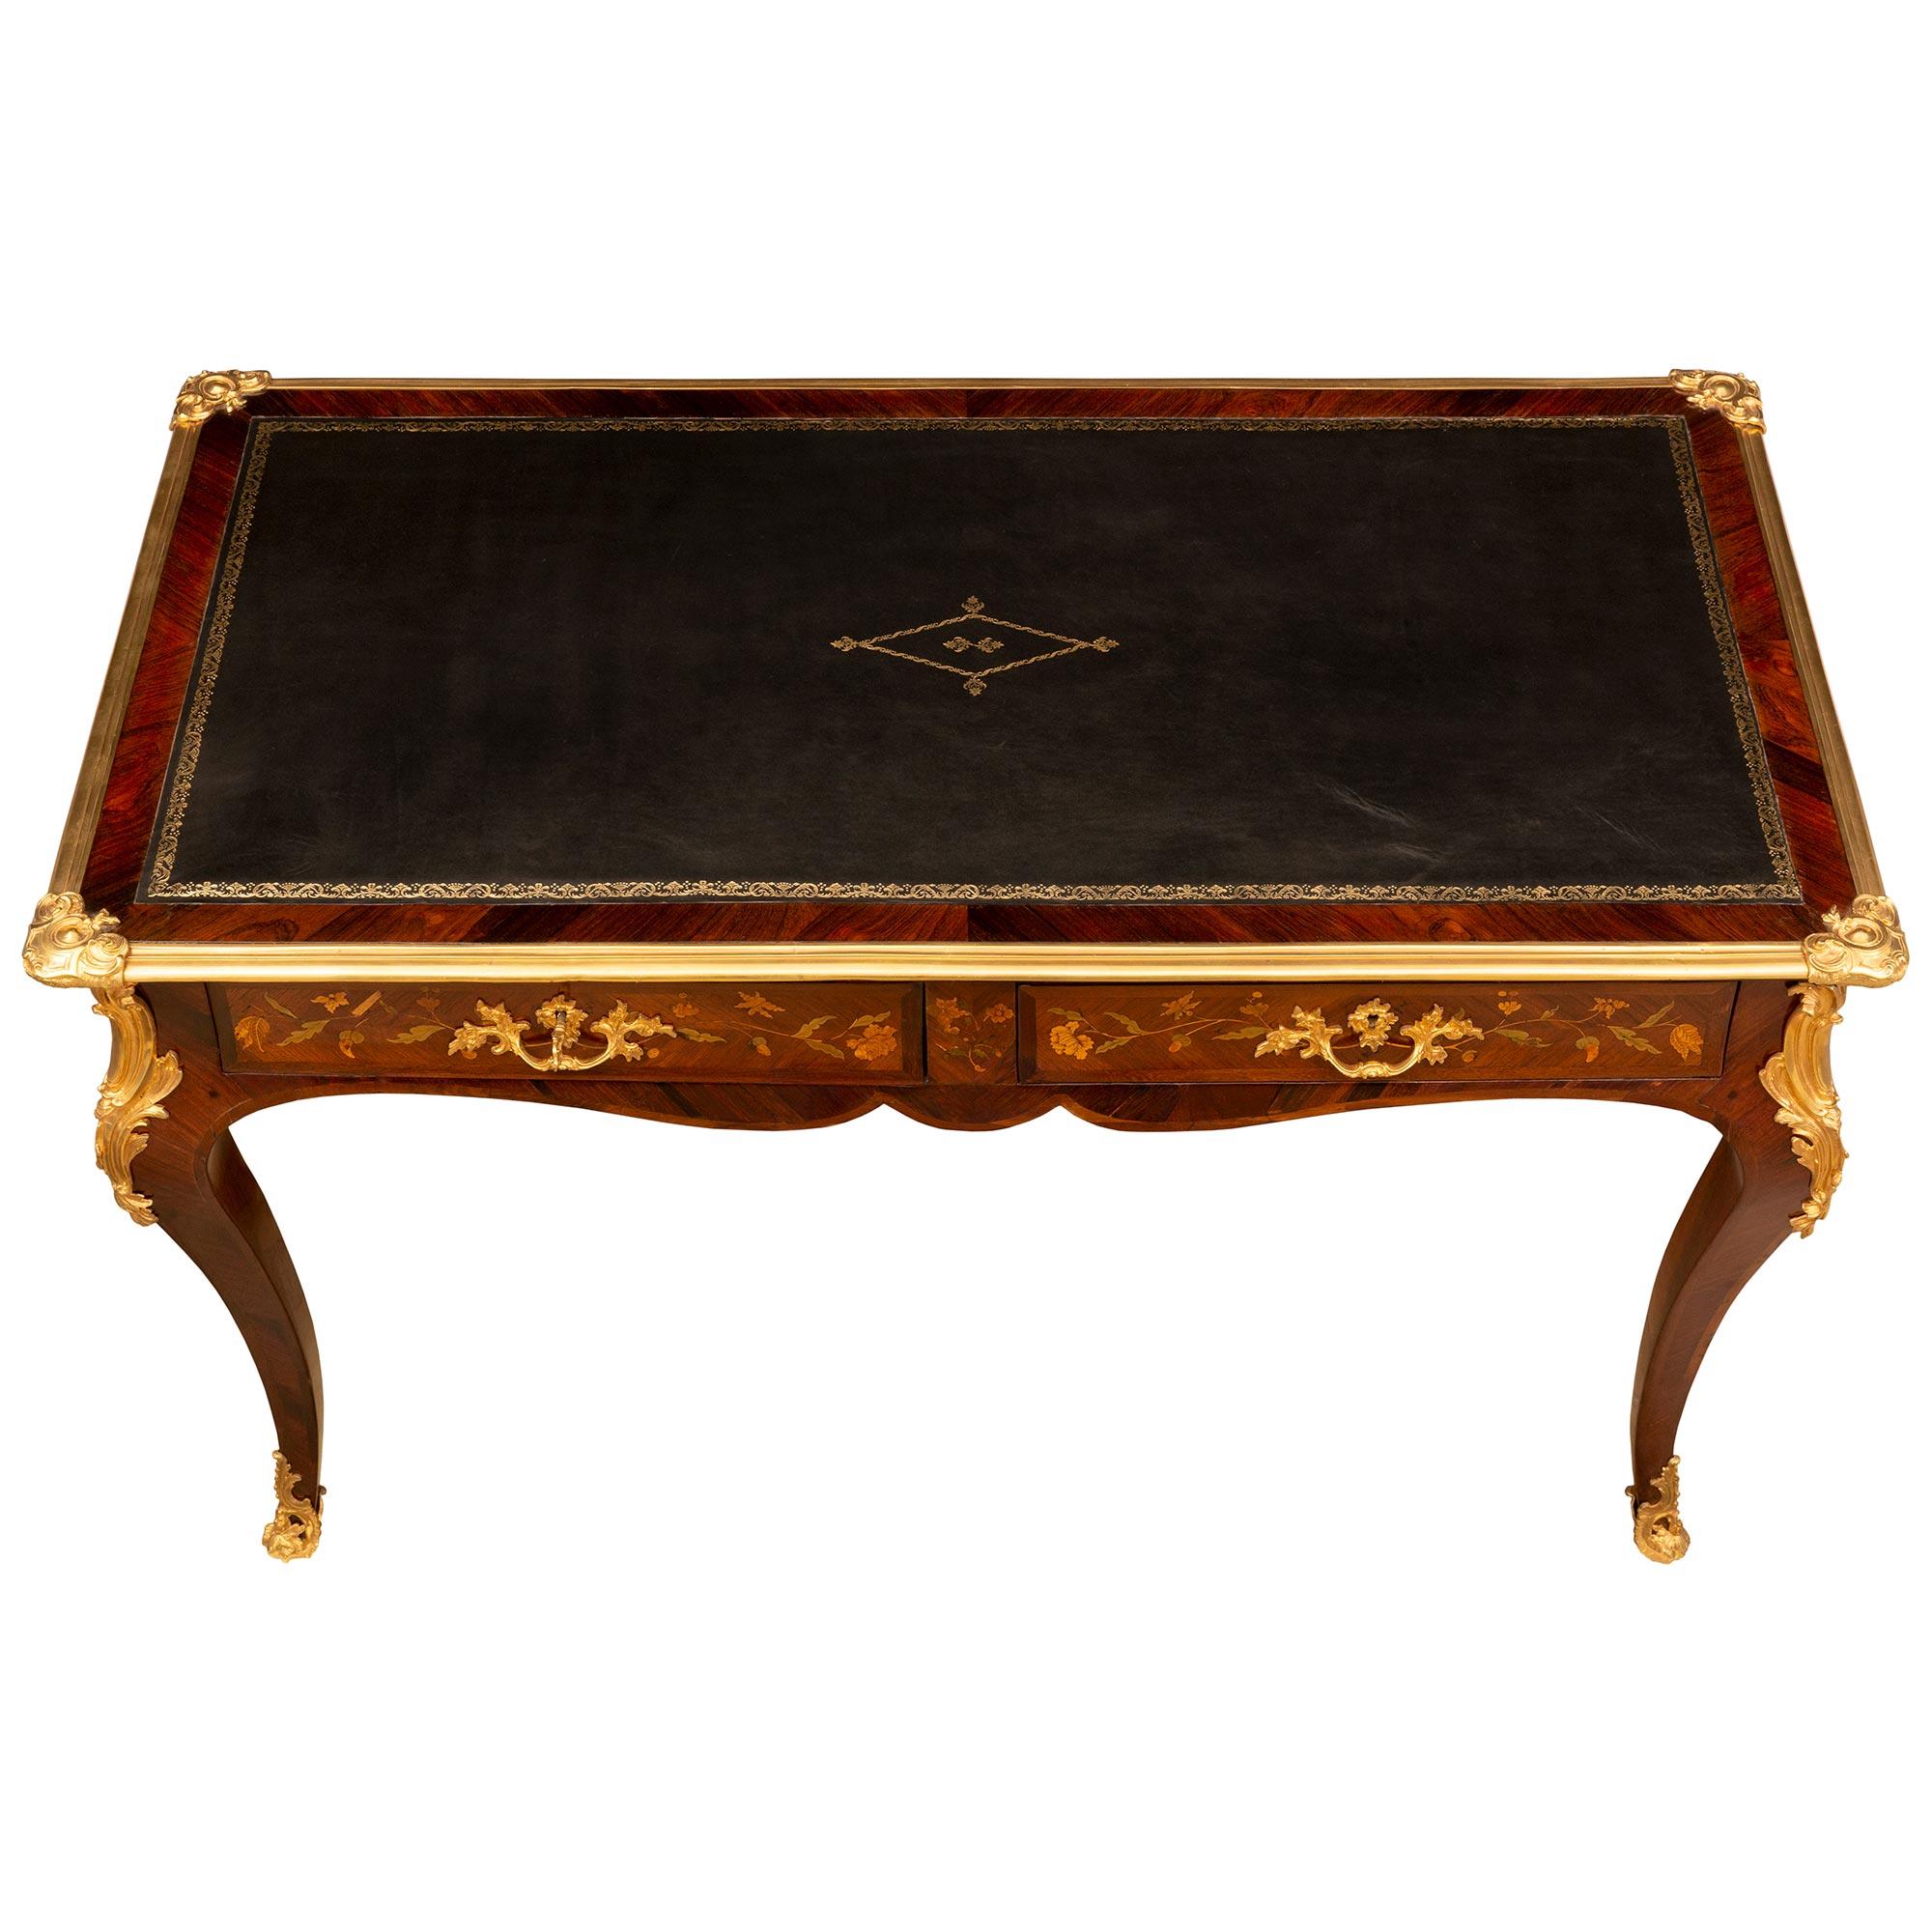 Eine außergewöhnliche und sehr elegante Französisch Anfang des 19. Jahrhunderts Louis XV st. Kingwood, Palisander, exotischem Holz, und Ormolu bureau plat Schreibtisch. Der Schreibtisch steht auf Cabriole-Beinen mit fein durchbrochenen, umlaufenden